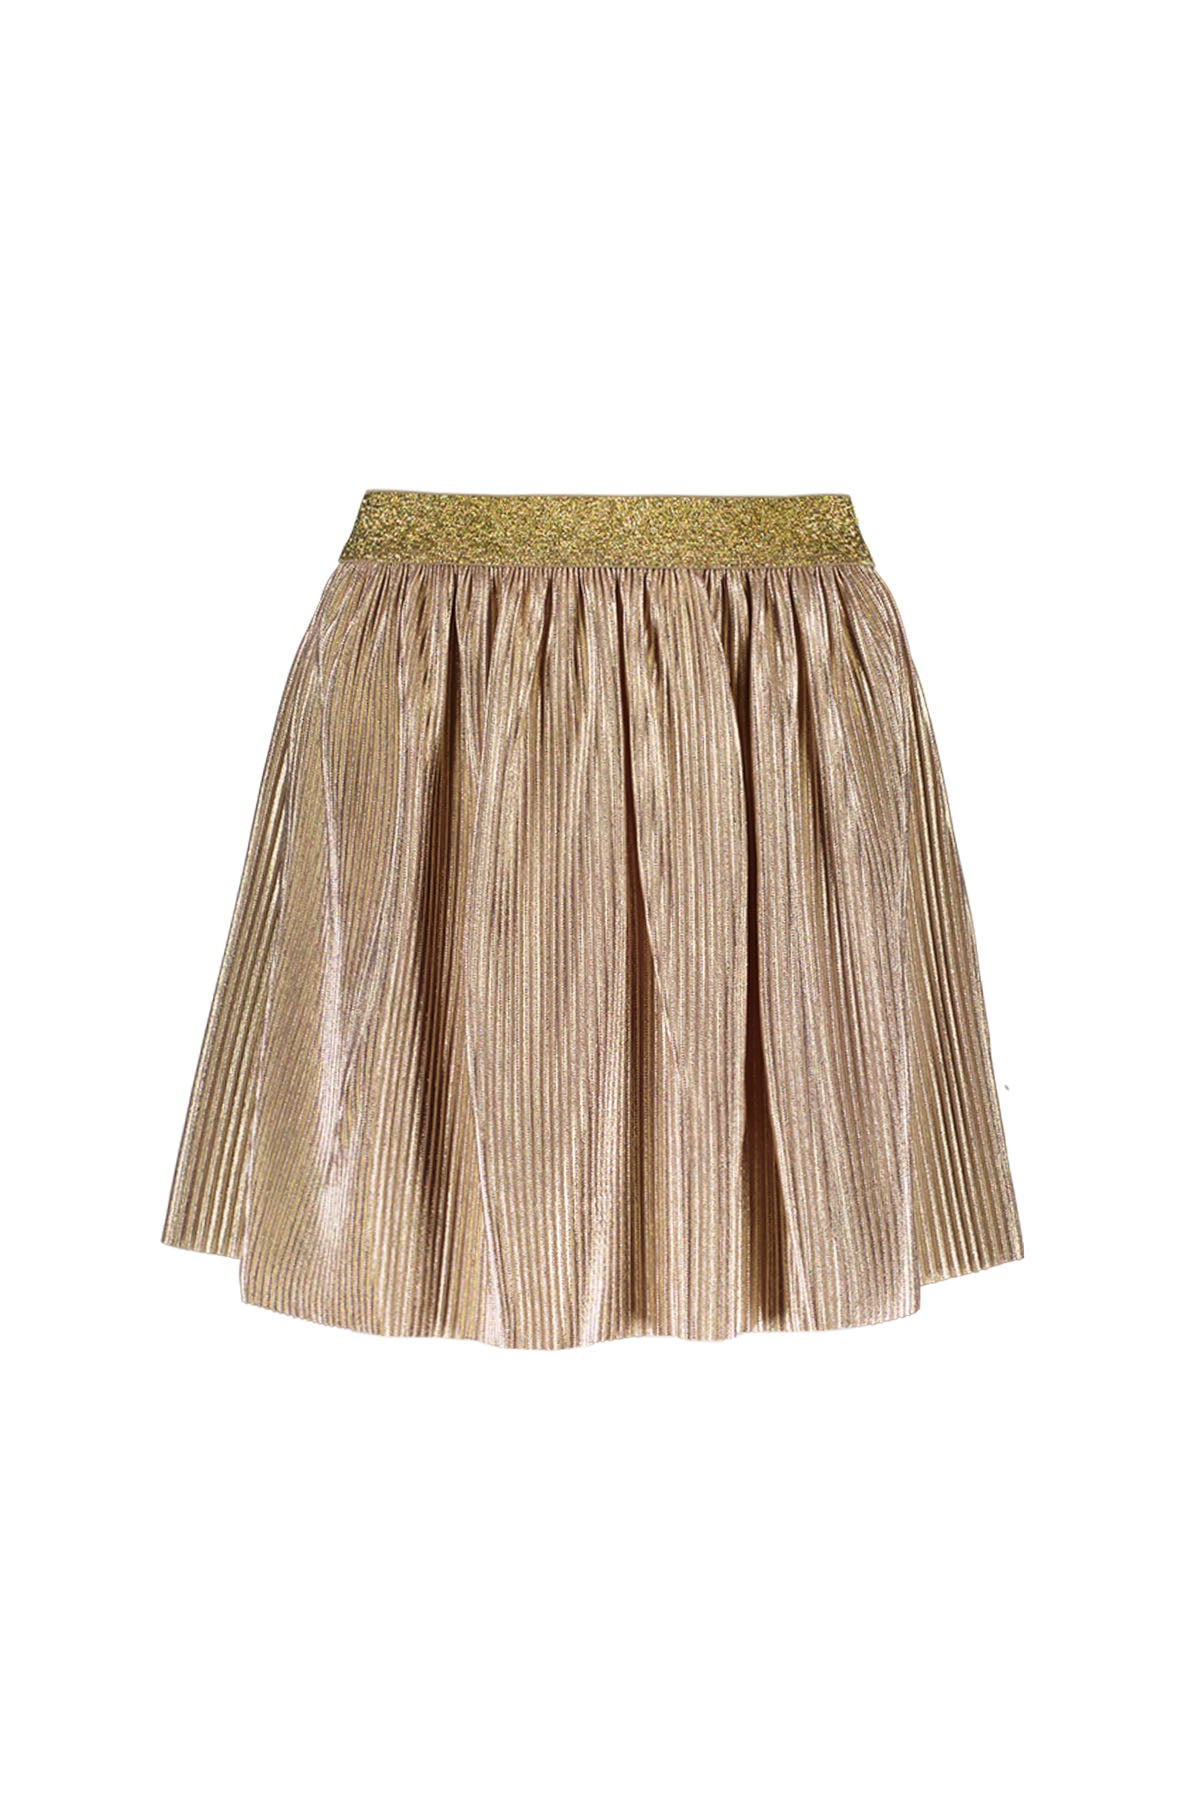 Like Flo Metallic Plisse Skirt